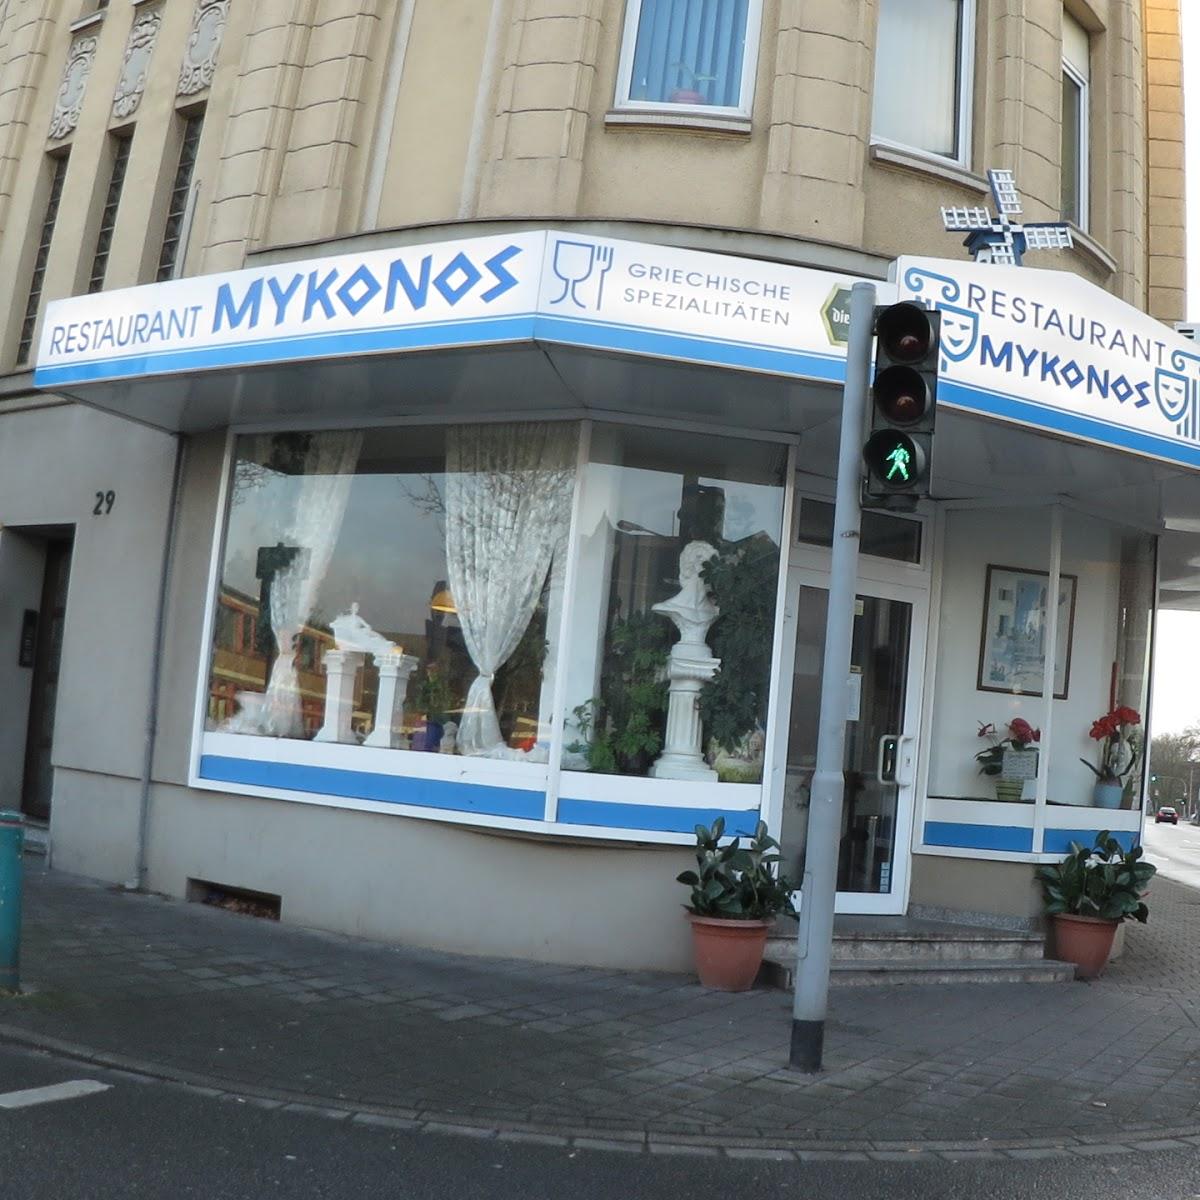 Restaurant "Restaurant Mykonos" in Duisburg